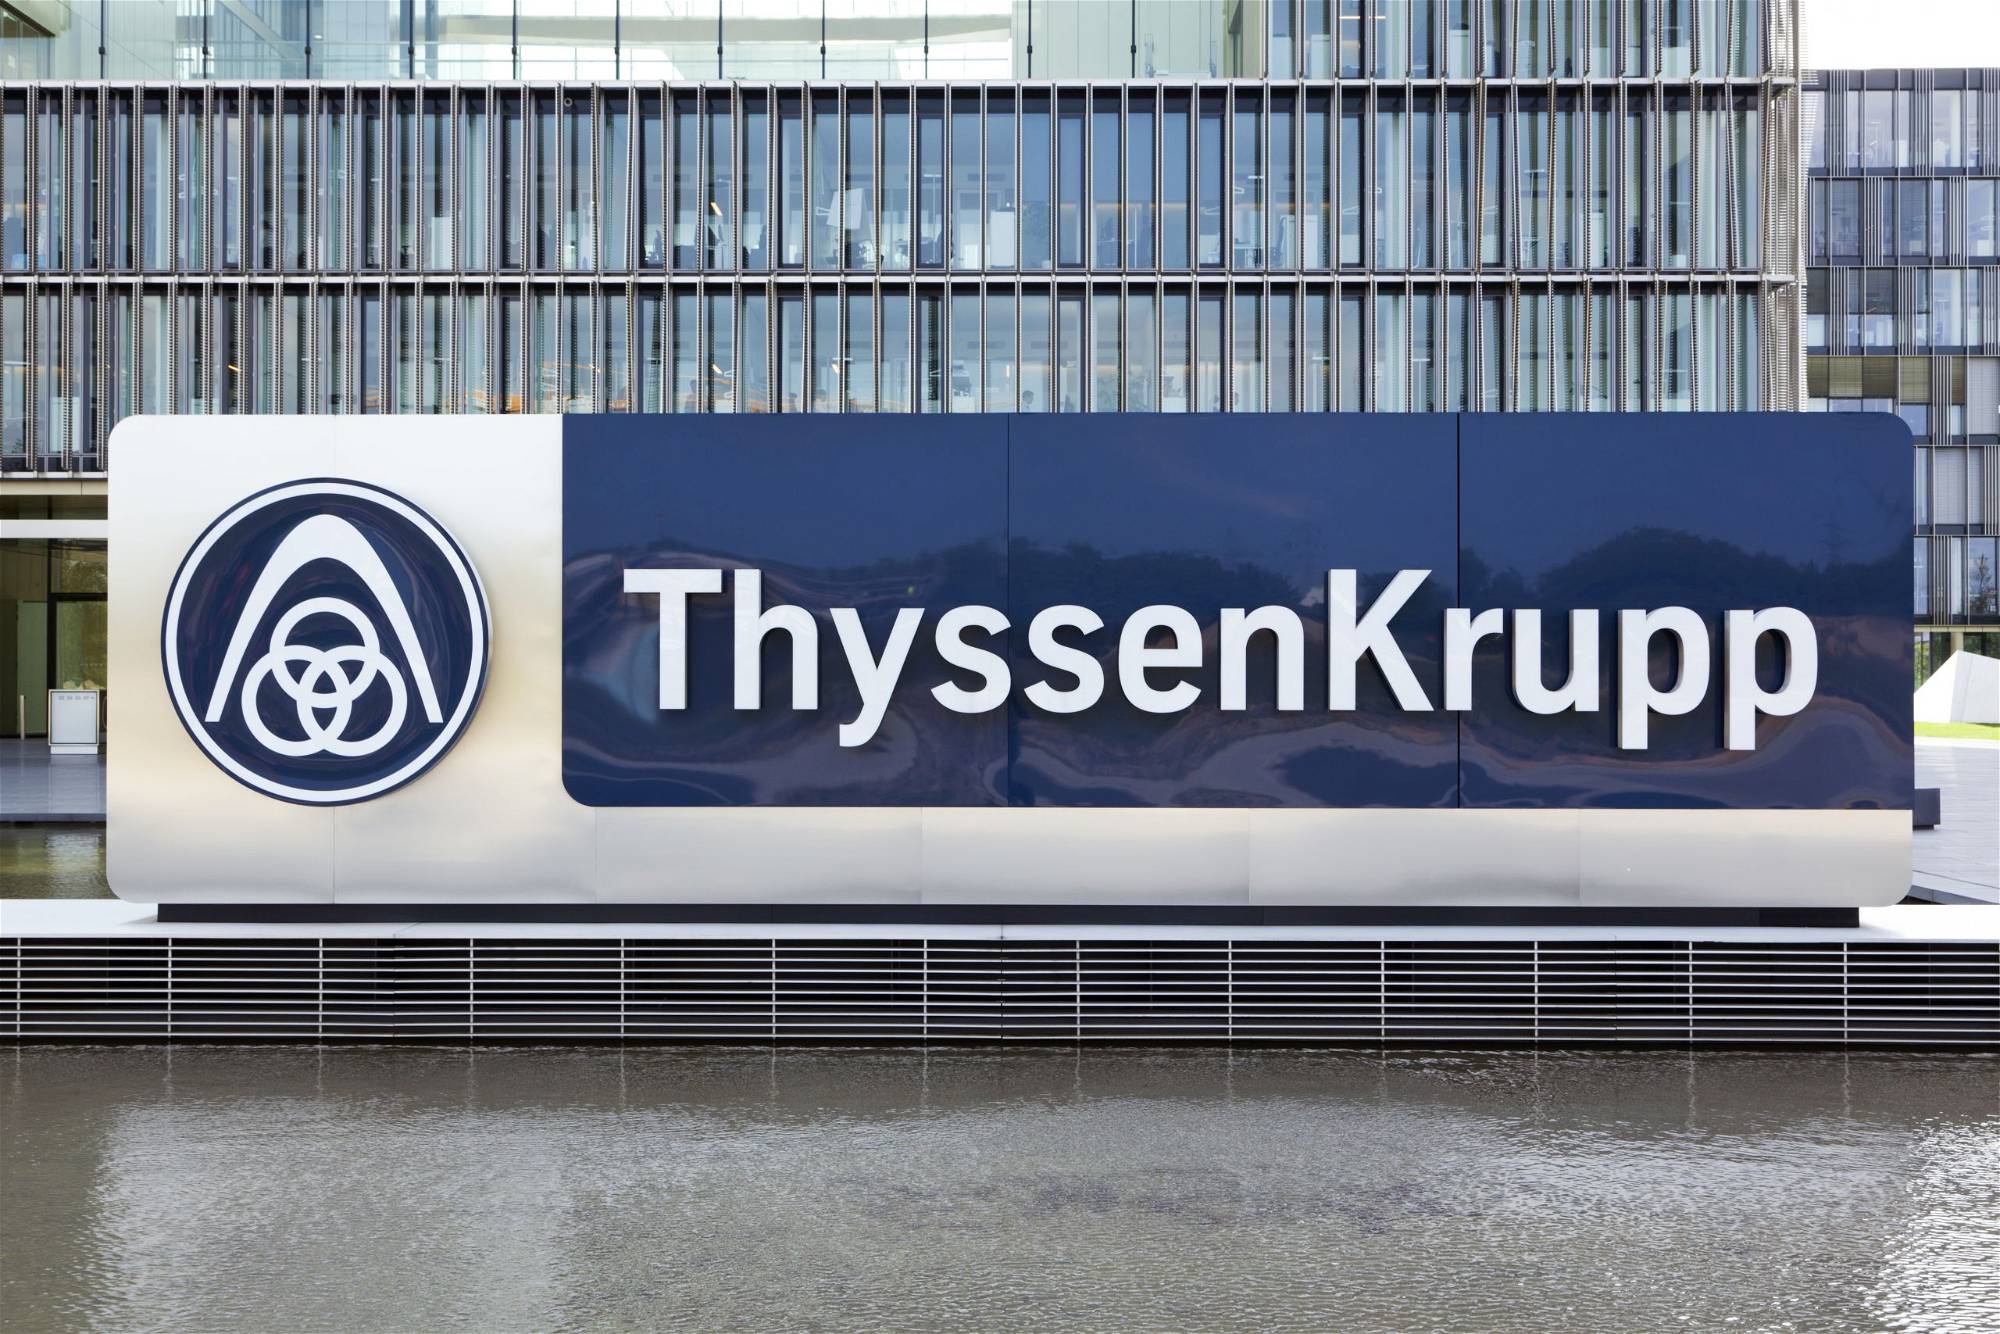 Thyssenkrupp-Aktie: Sollten Sie jetzt kaufen?